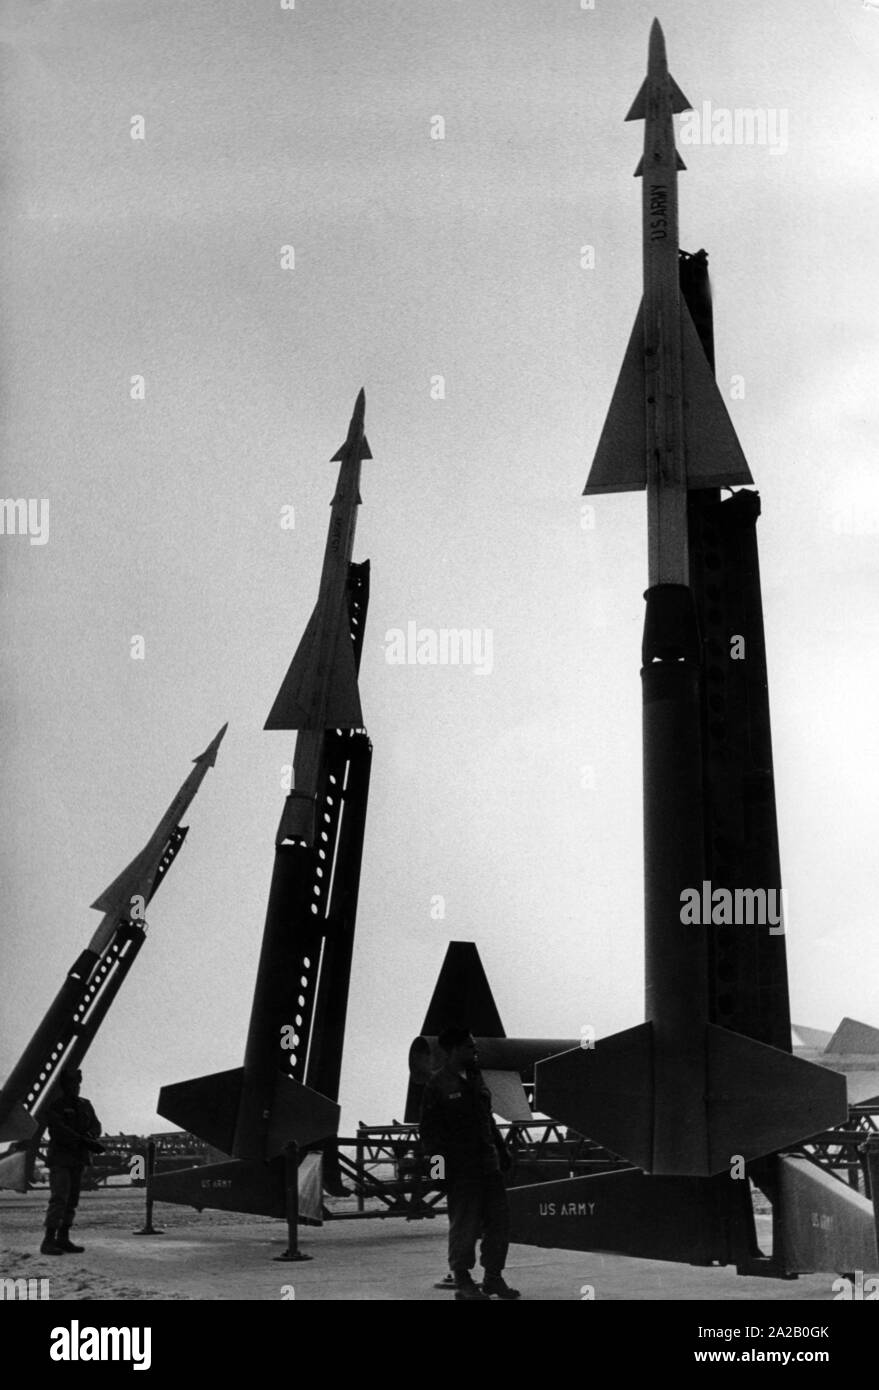 Das Bild zeigt die US-Soldaten neben Rakete Systeme des Typs Nike Ajax,  vermutlich in den späten 1950er Jahren. Diese Boden-Luft-Raketen konzipiert  waren, gegen die feindlichen Bomber zu verteidigen. Das Bild war vor